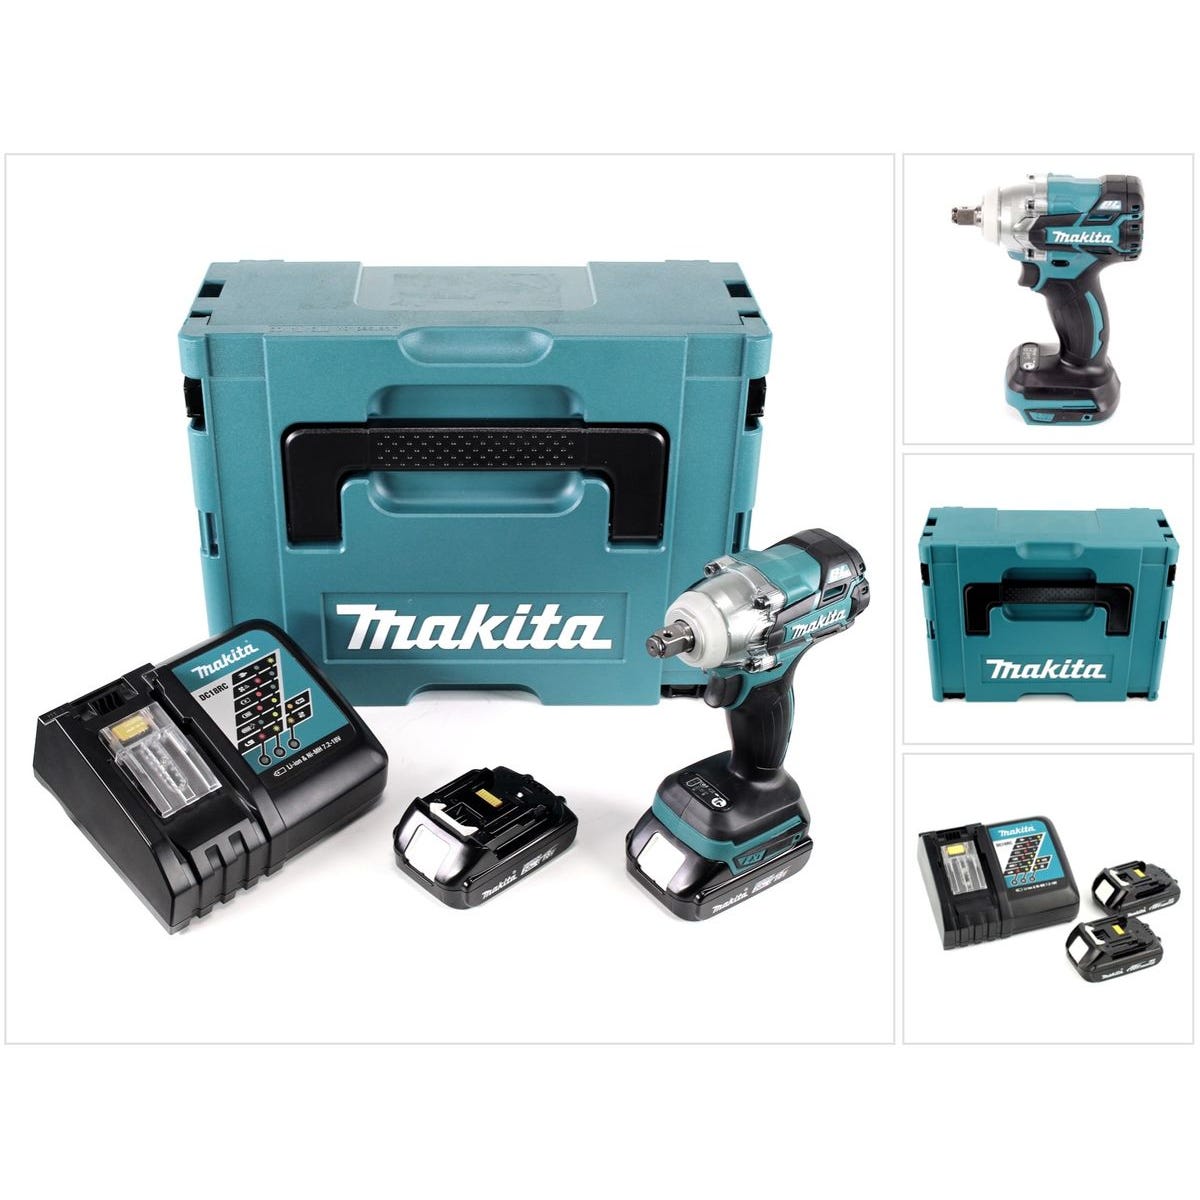 Makita DTW 285 Y1J-P 18 V Li-Ion Boulonneuse à chocs sans fil avec boîtier Makpac 2 + 2x Batteries BL 1820 2,0 Ah + Chargeur rapide DC 18 RC 4